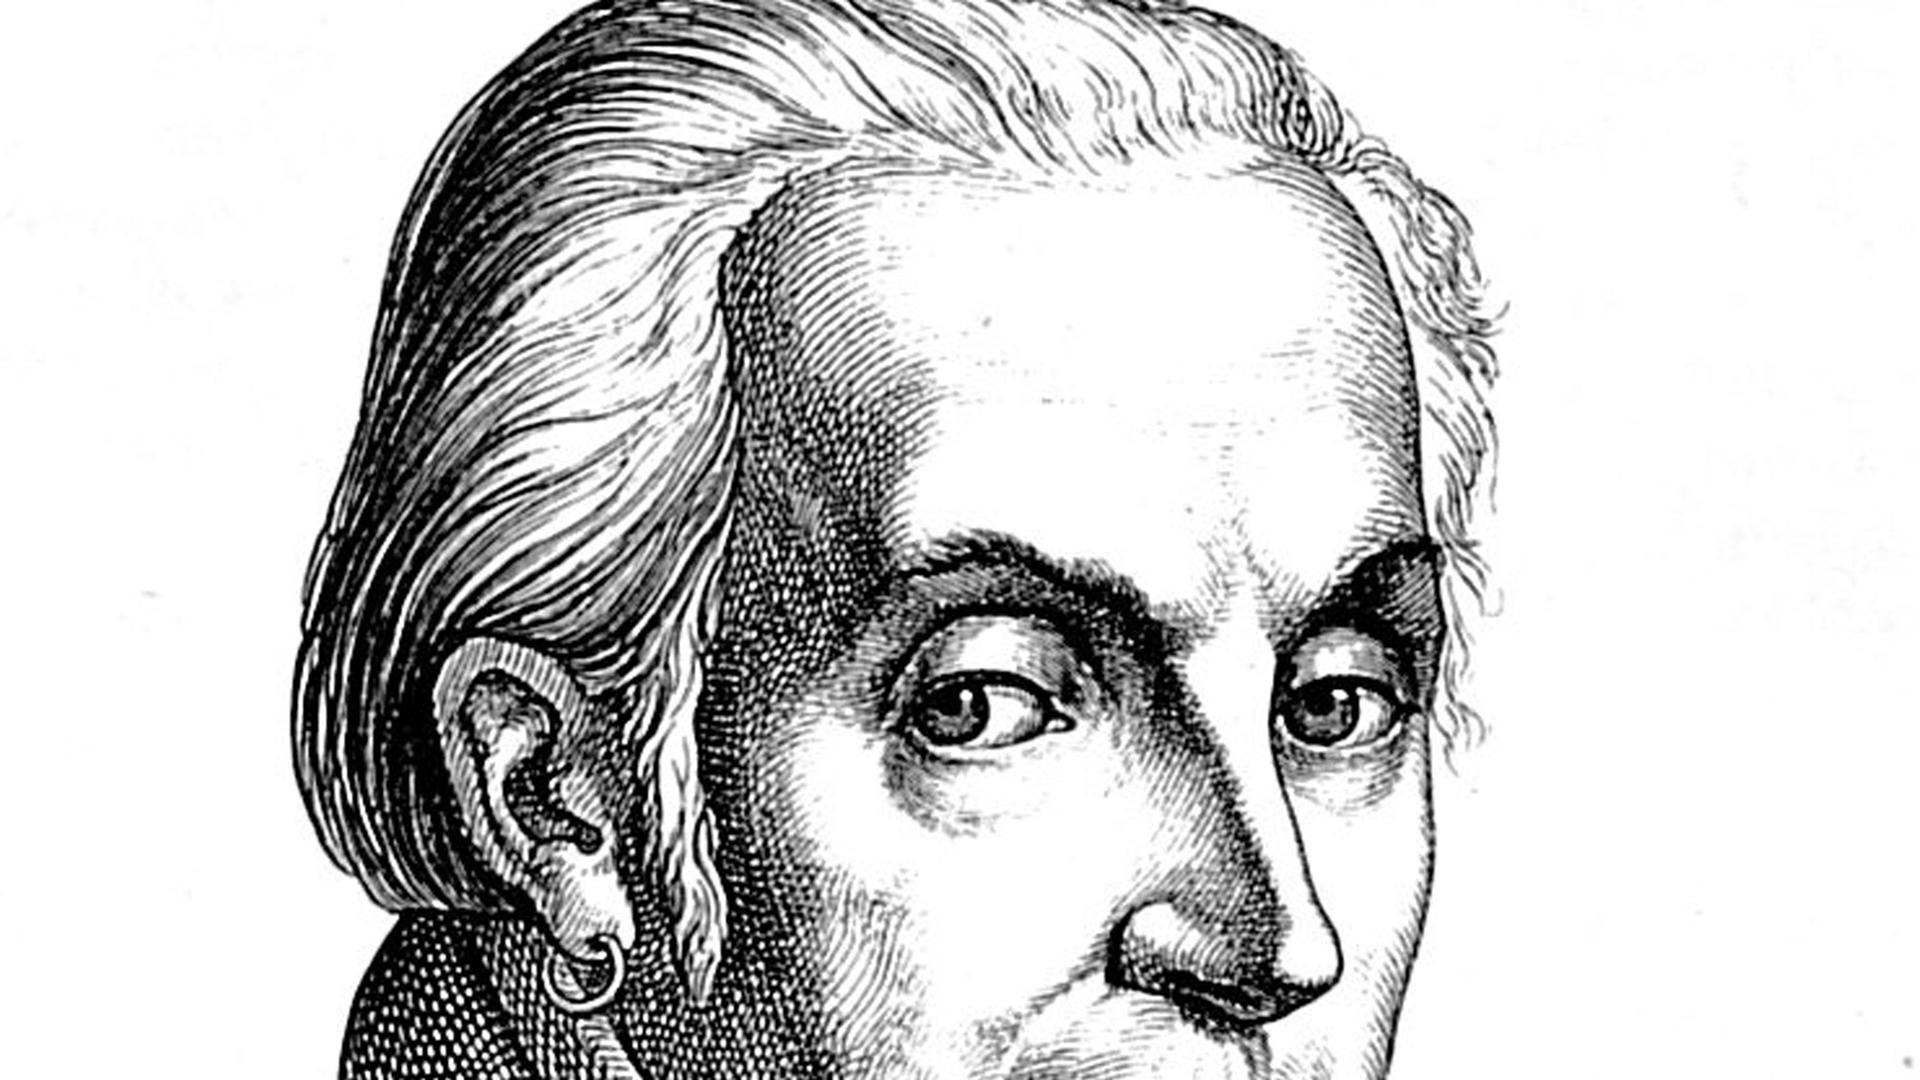 Zeitgenössische Darstellung des deutschen Schriftstellers und Dramatikers August Wilhelm Iffland (1777-1814).